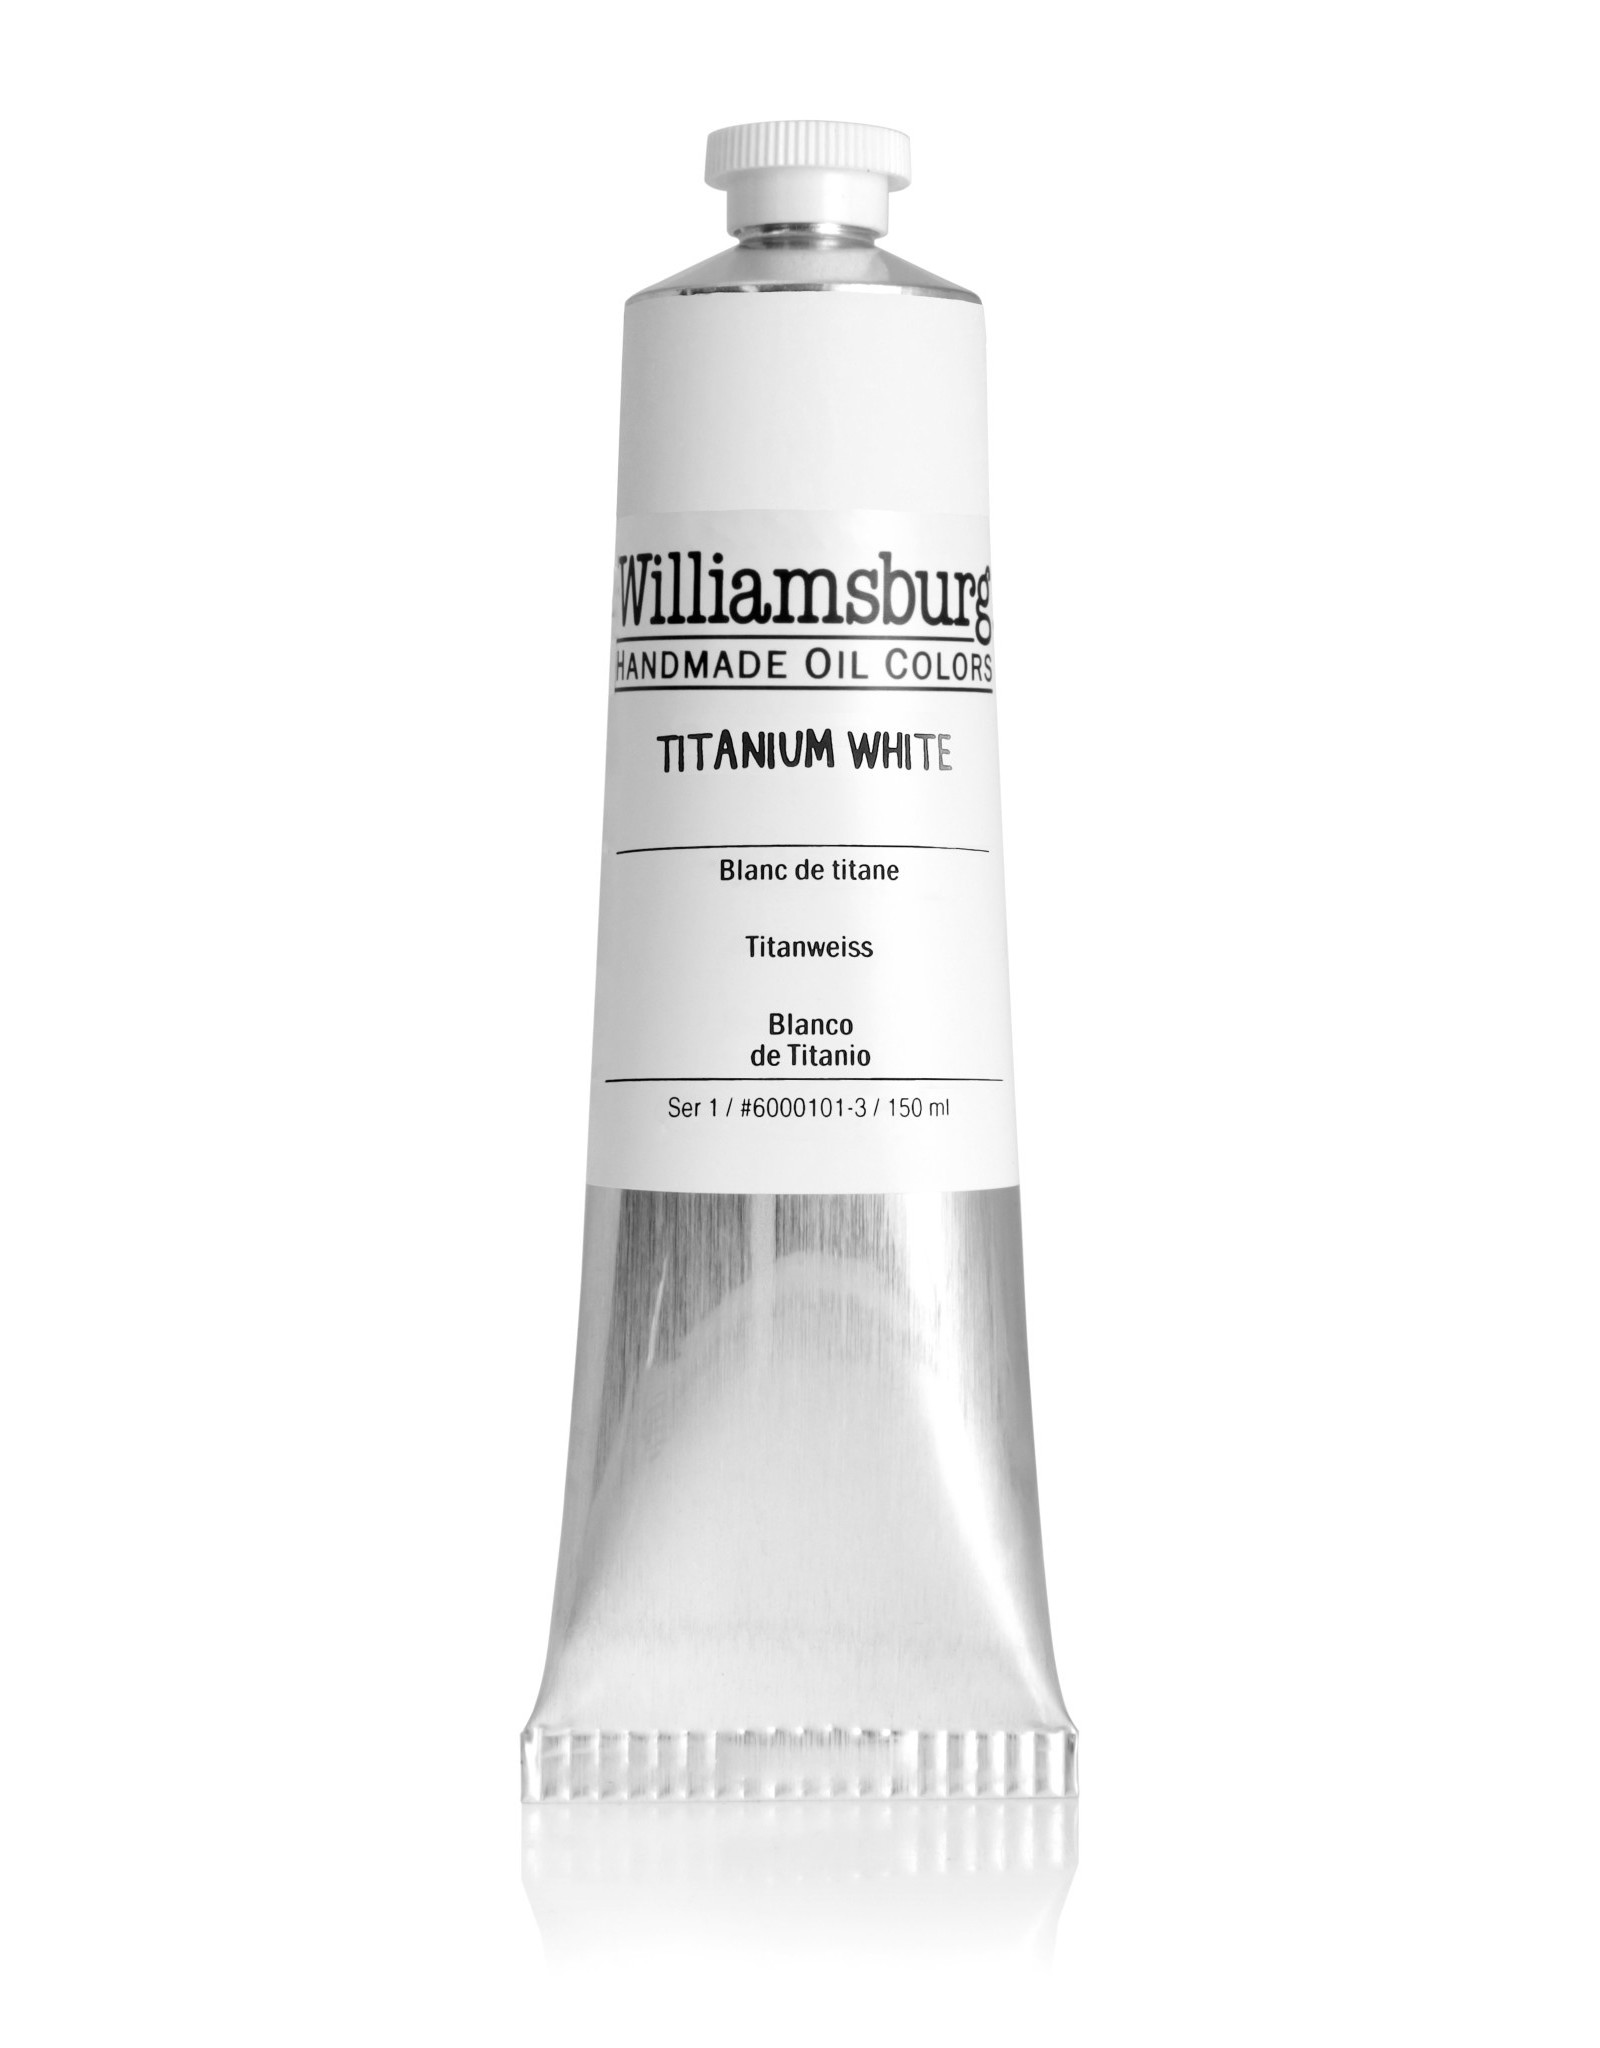 Golden Williamsburg Titanium White 150 ml tube